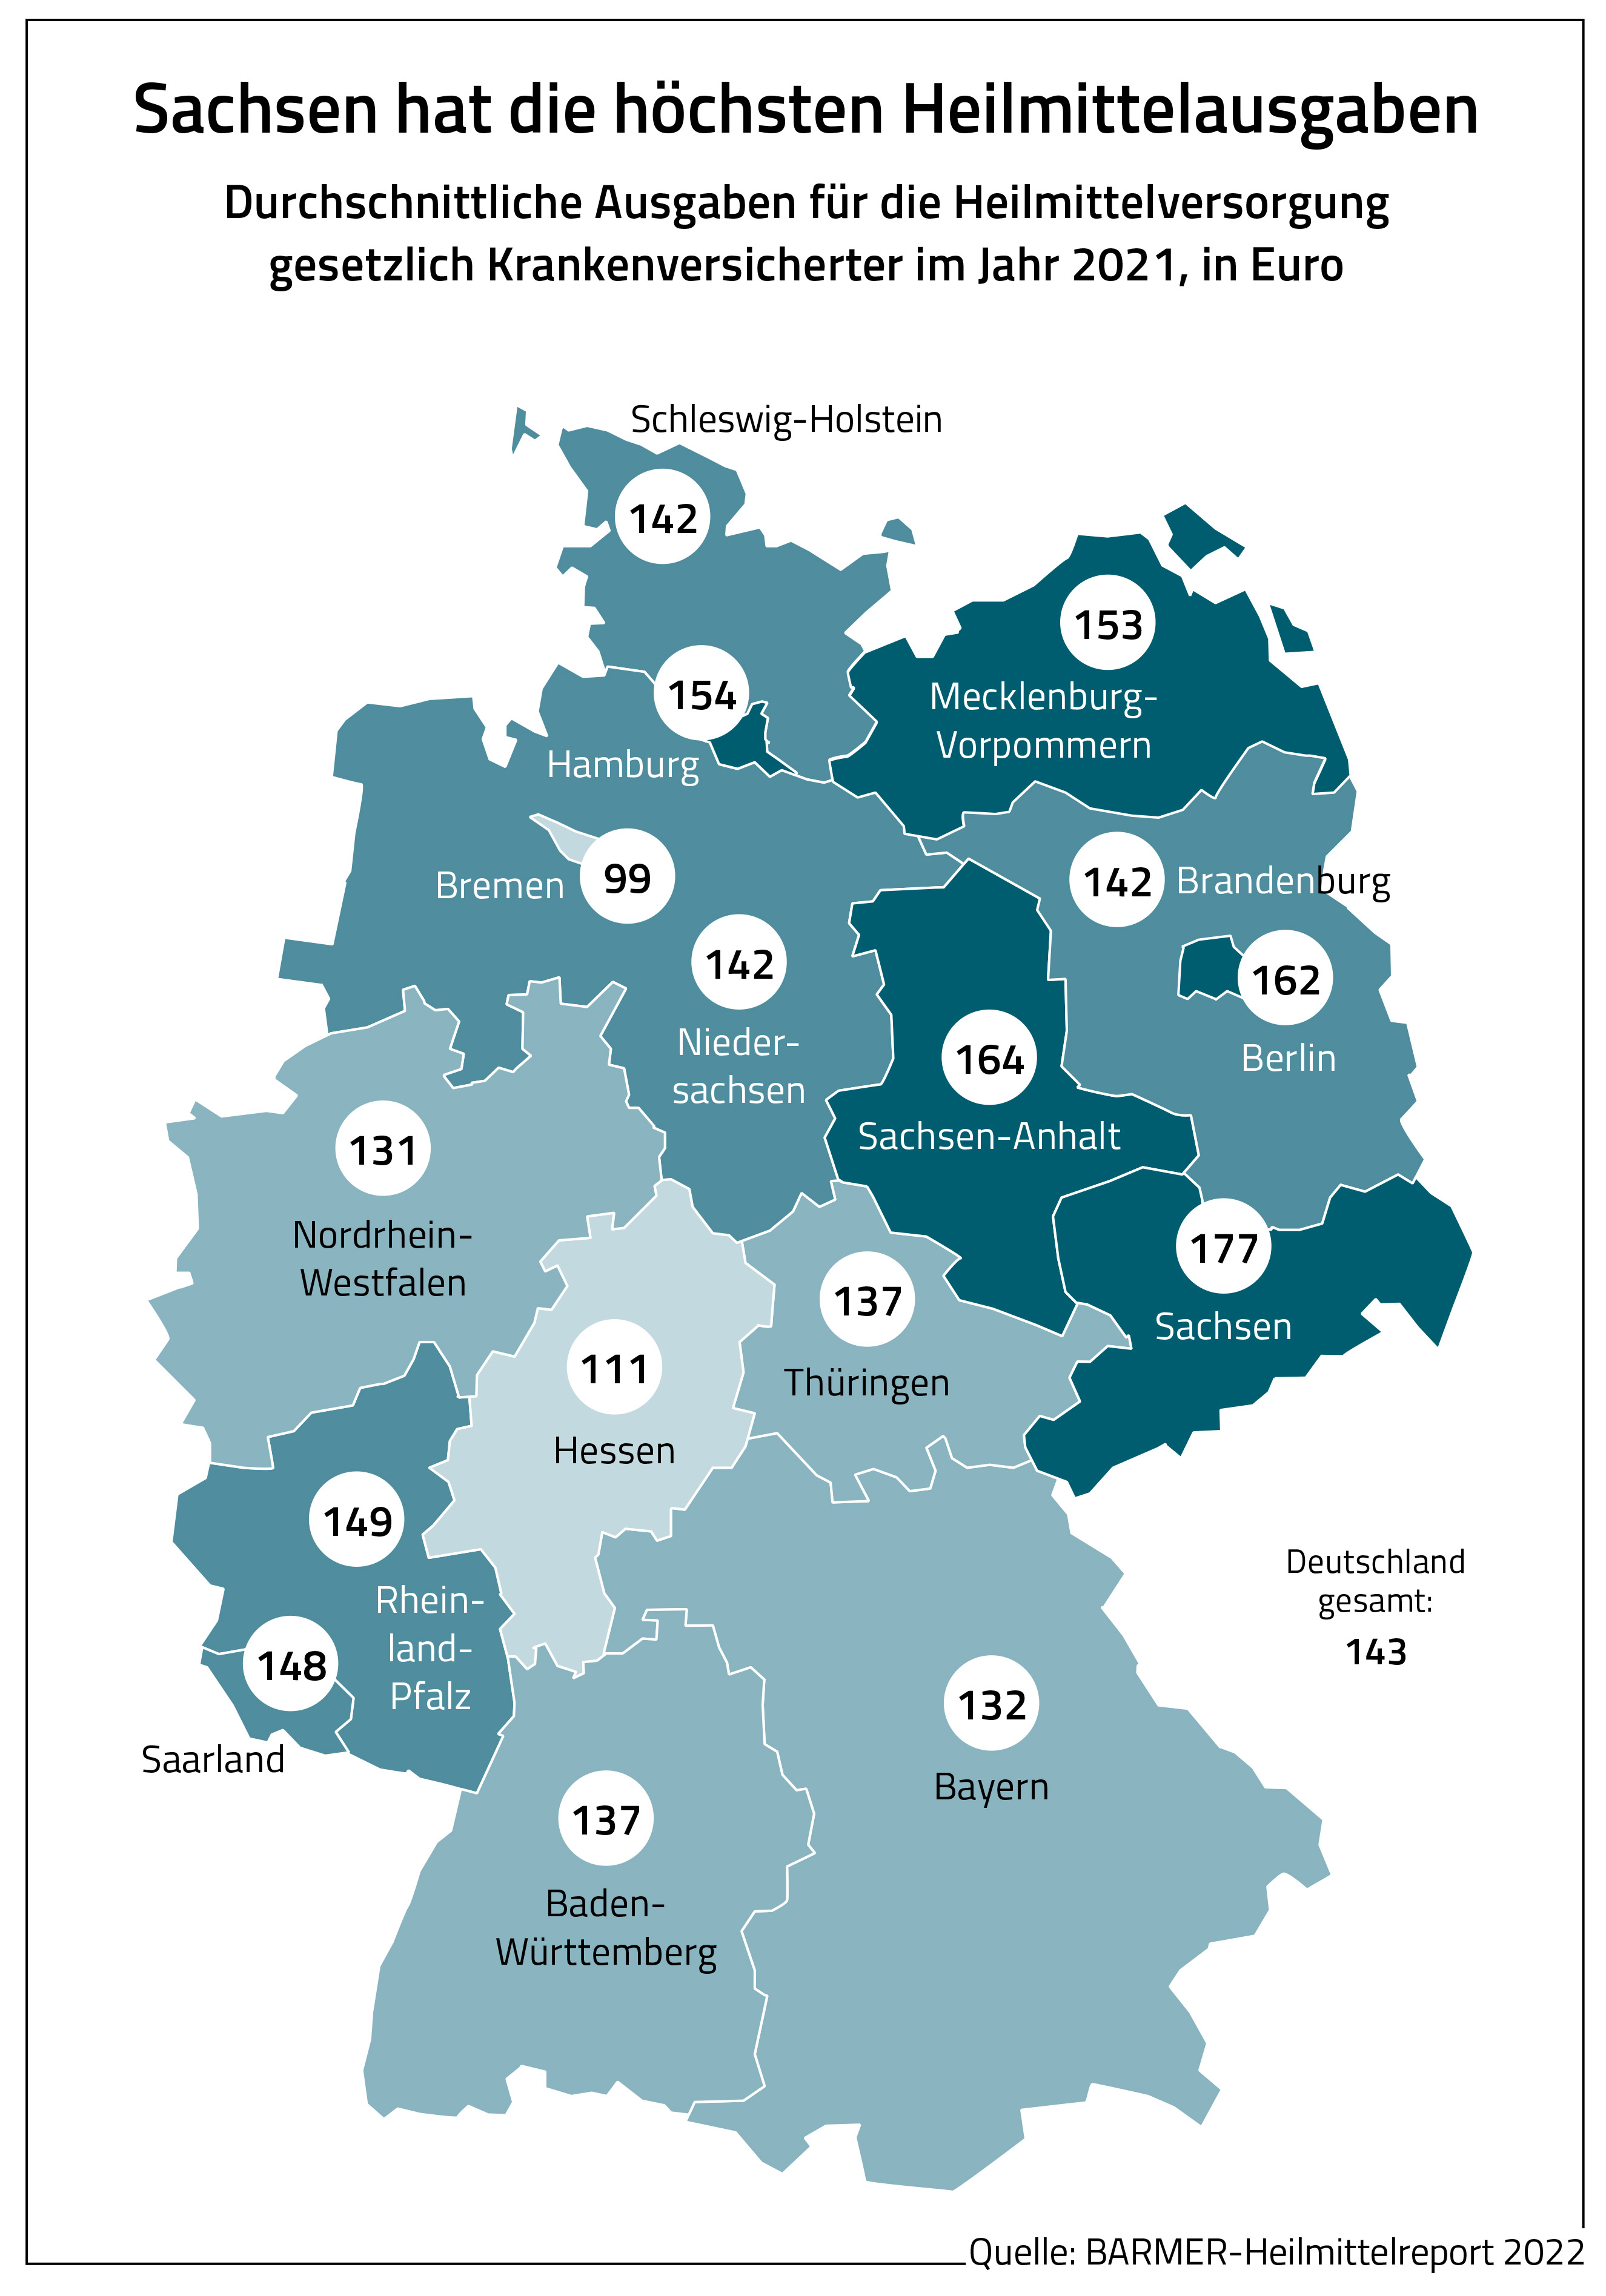 Grafik: Sachsen hat die höchsten Heilmittelausgaben